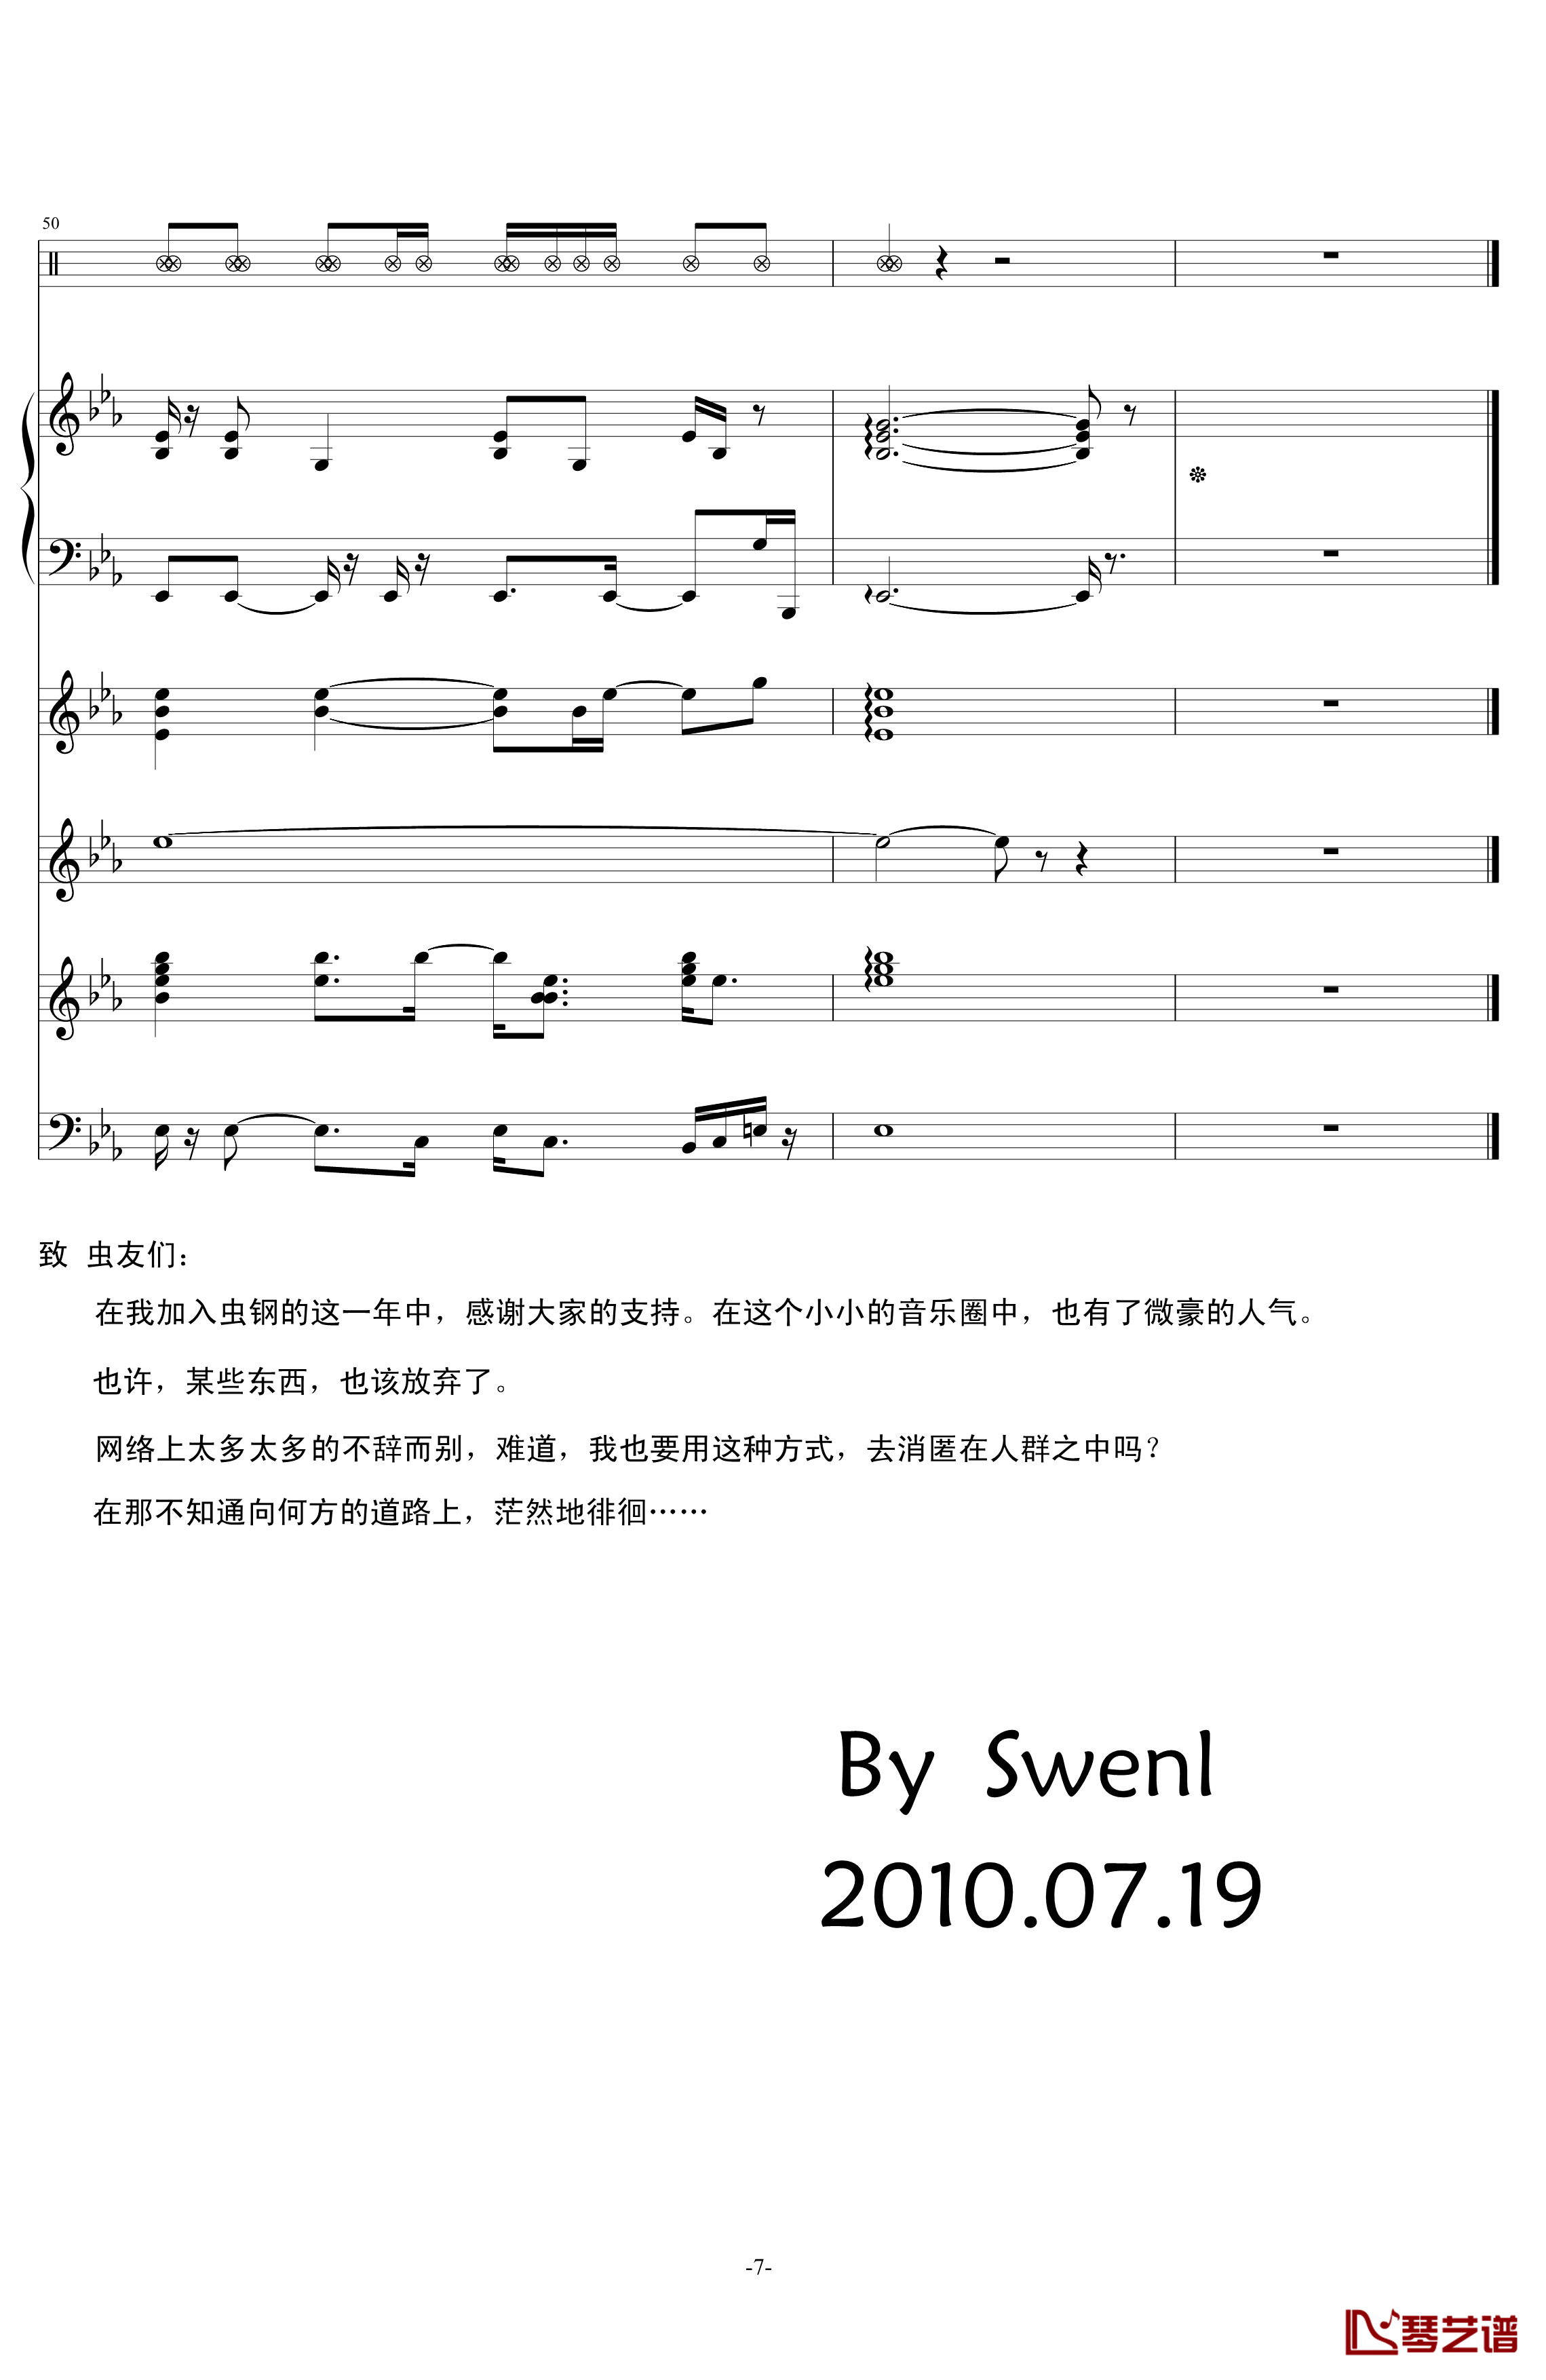 斯文诺钢琴谱-音效修改-swenl7